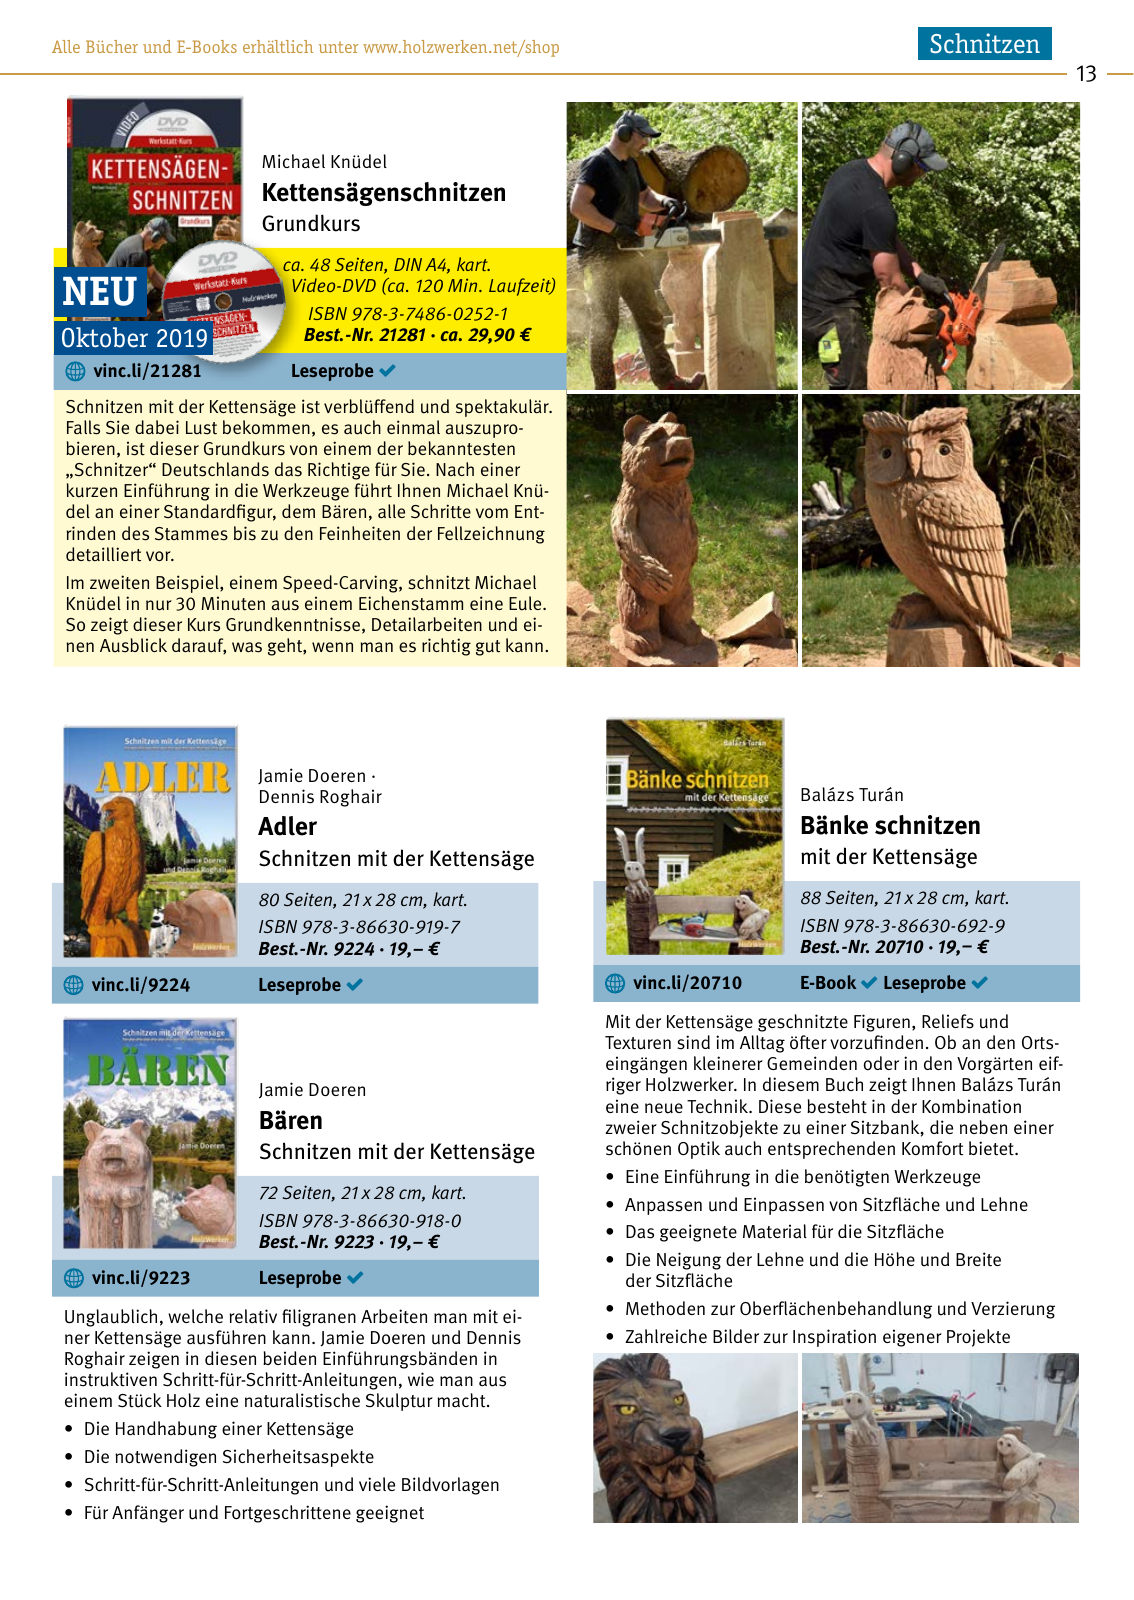 Vorschau HolzWerken Katalog 2020 Seite 13